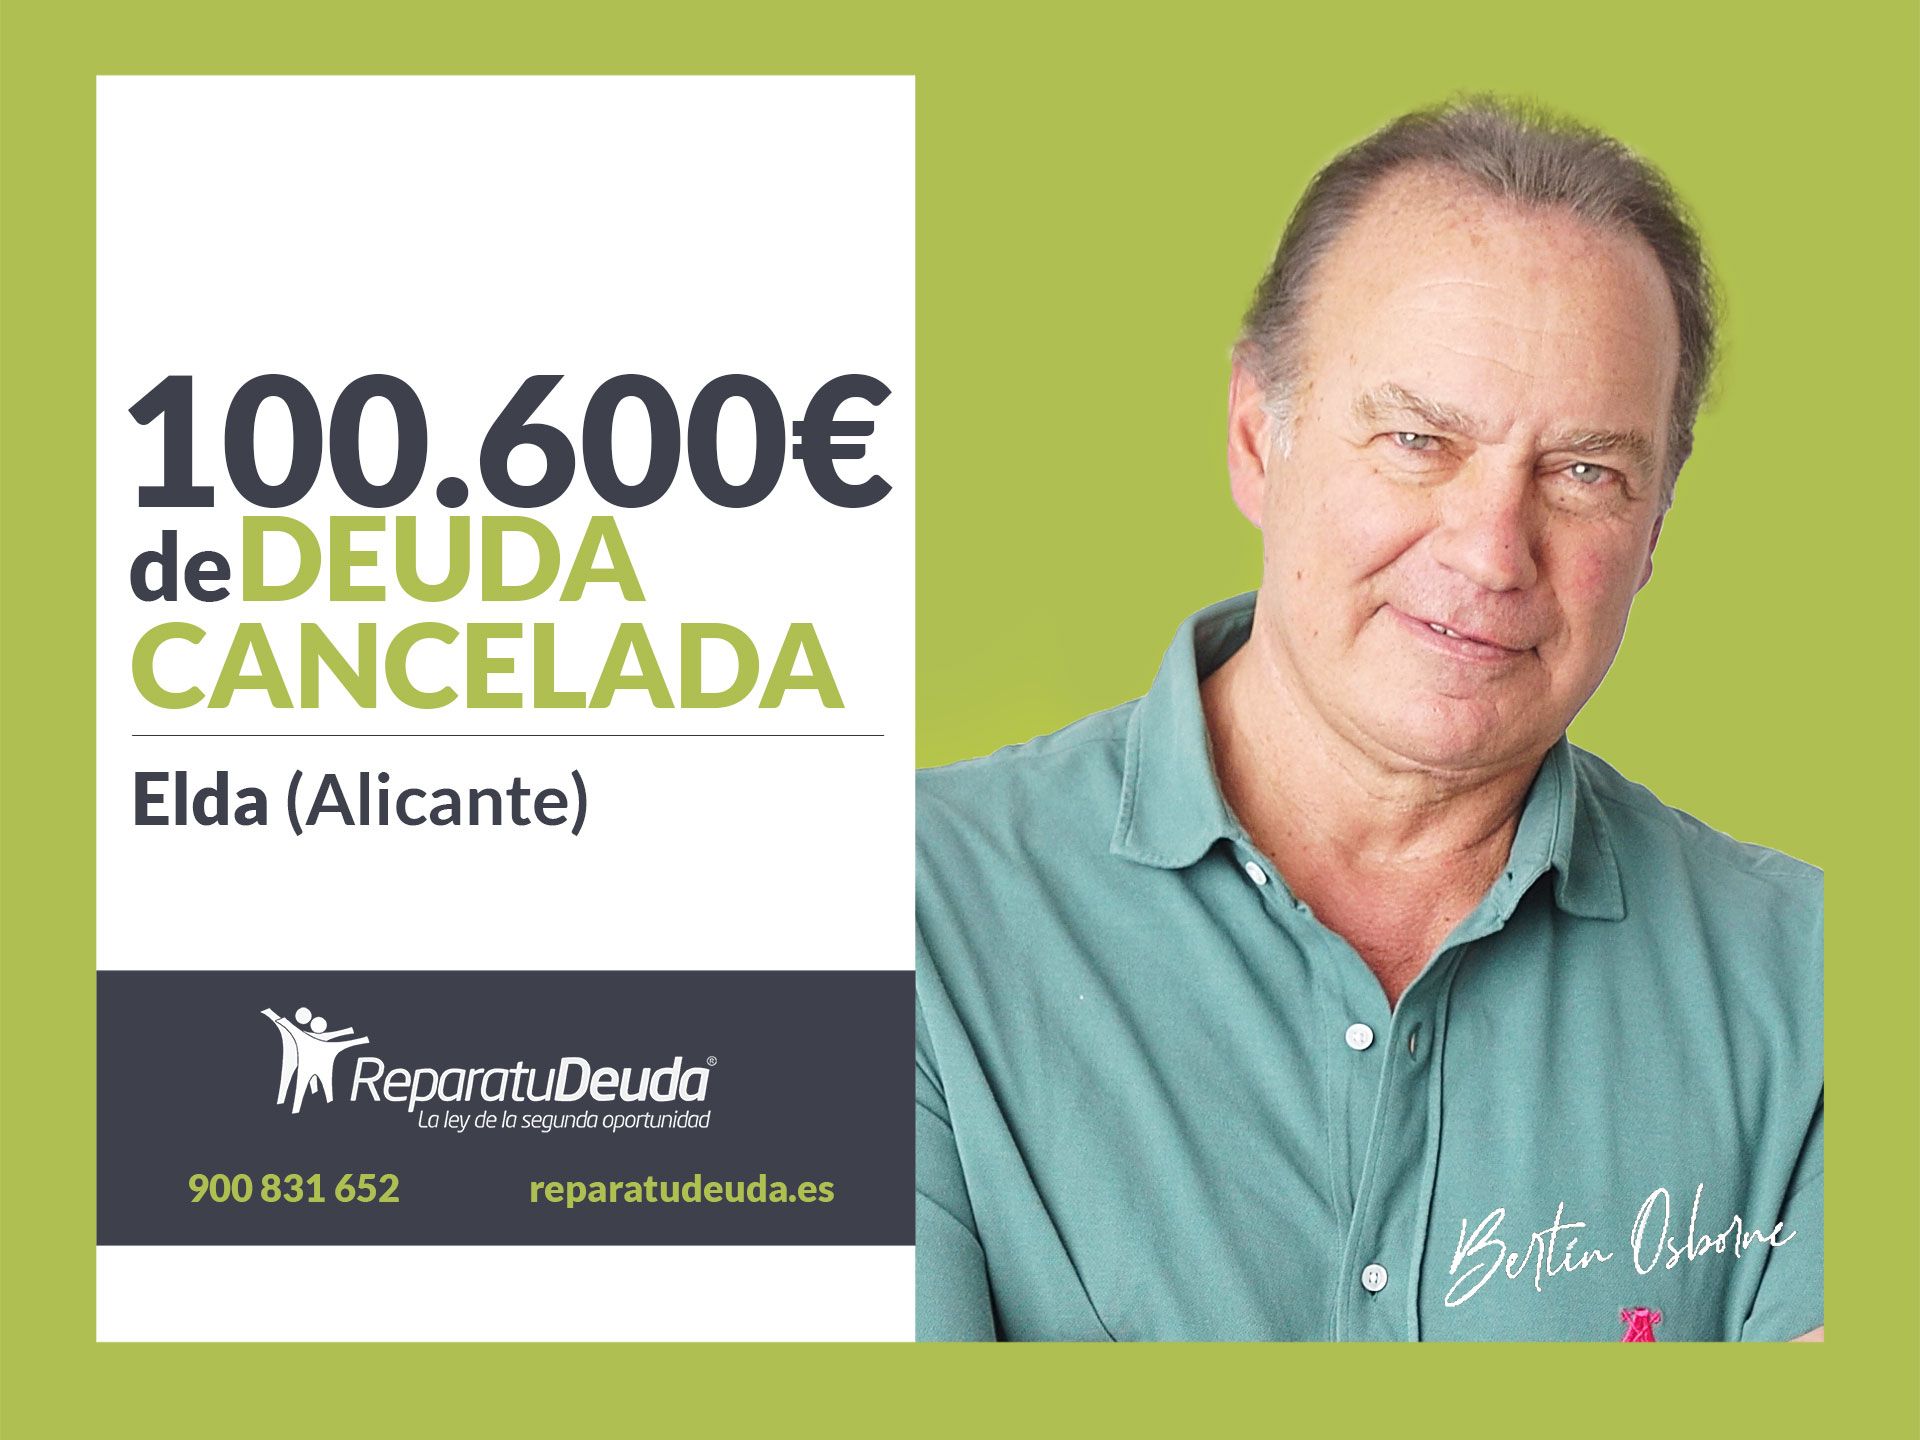 Repara tu Deuda Abogados cancela 100.600? en Elda (Alicante) con la Ley de Segunda Oportunidad